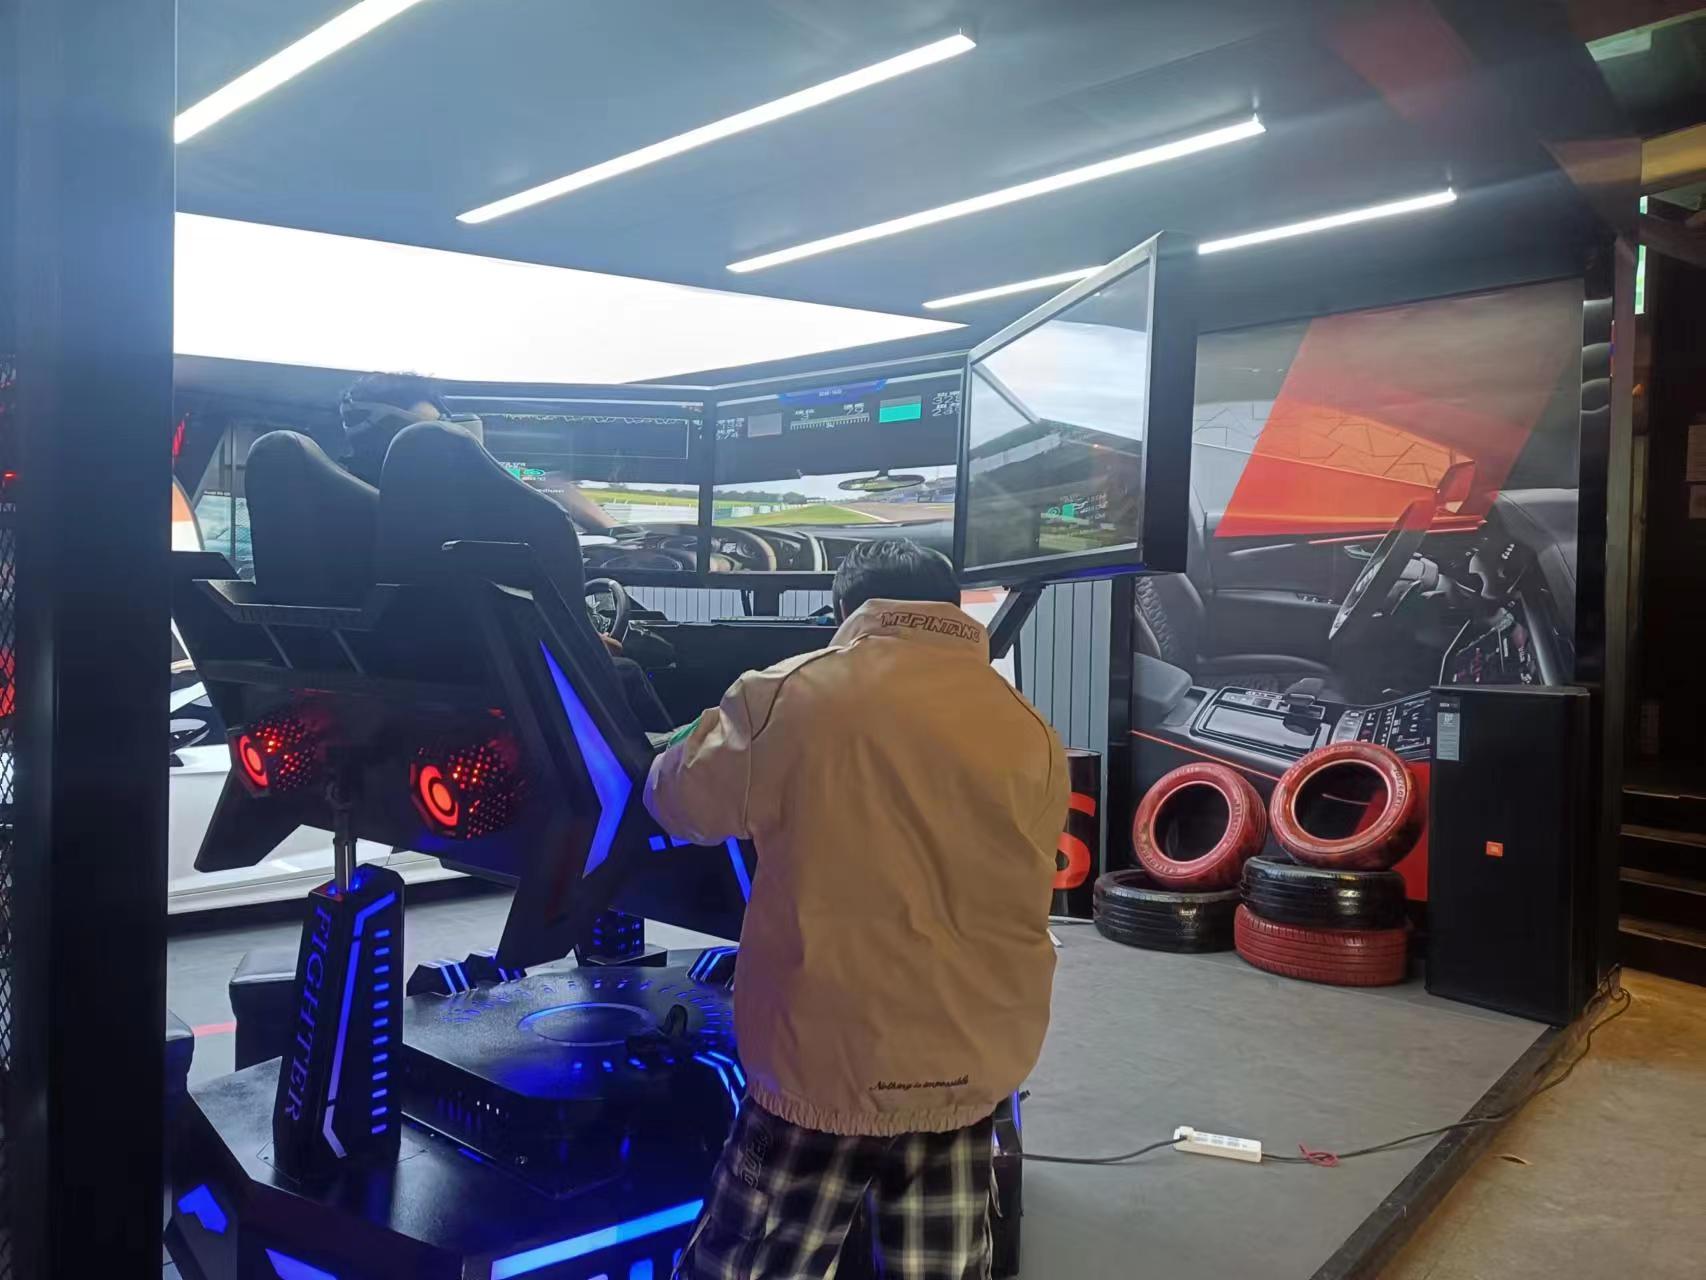 VR赛车模拟器出租 VR赛车驾驶VR赛车模拟器出租 VR赛车驾驶VR赛车驾驶体验出租VR设备租赁VR蛋椅出租VR